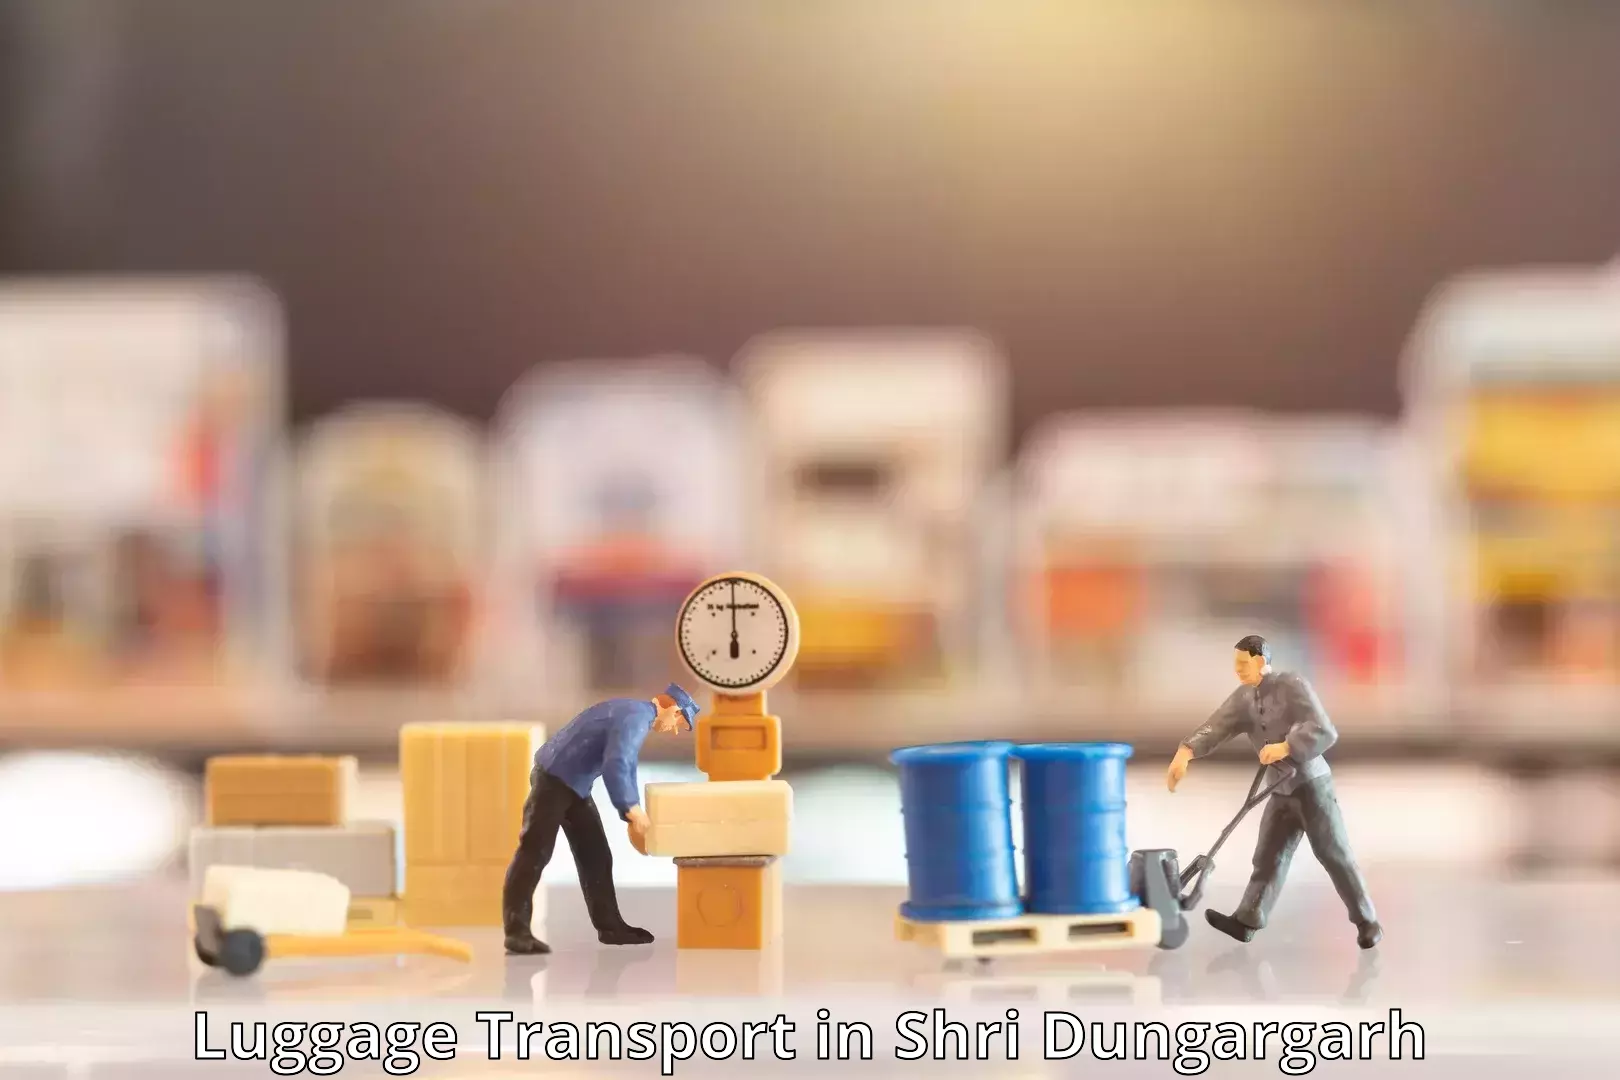 Baggage transport innovation in Shri Dungargarh